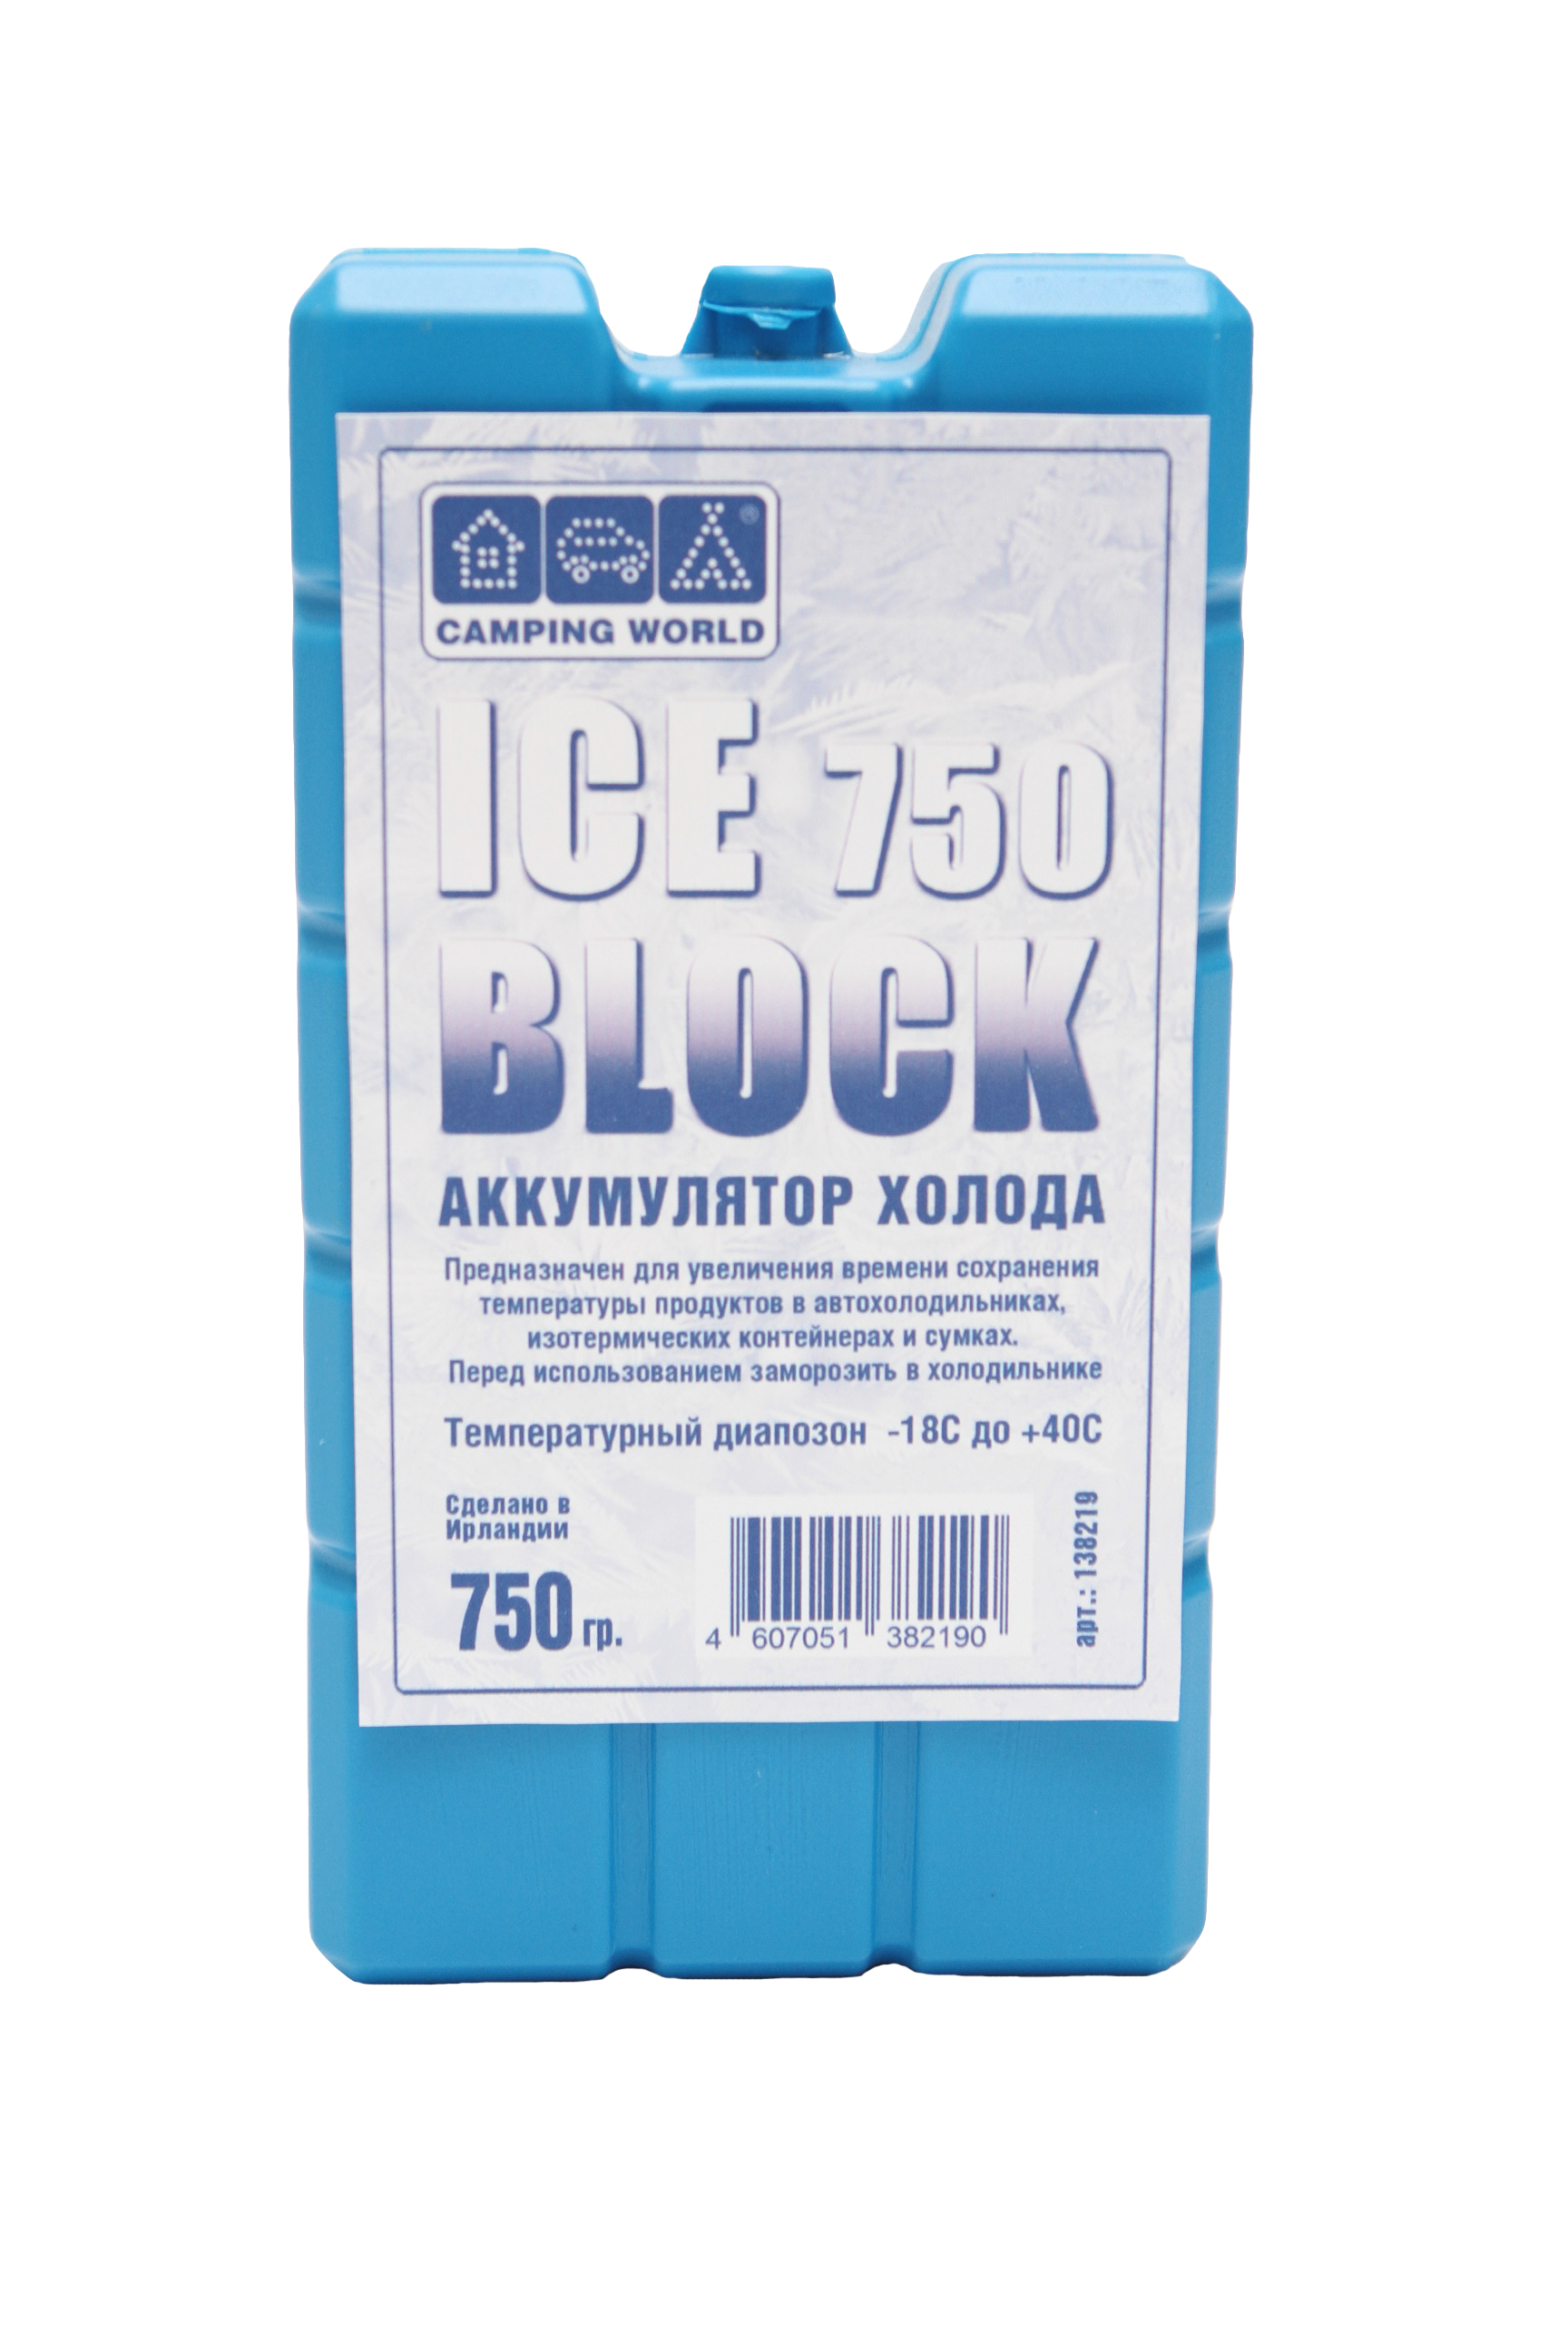 Аккумулятор холода Camping World Iceblock 750 с доставкой по России и в Казахстан | Bready